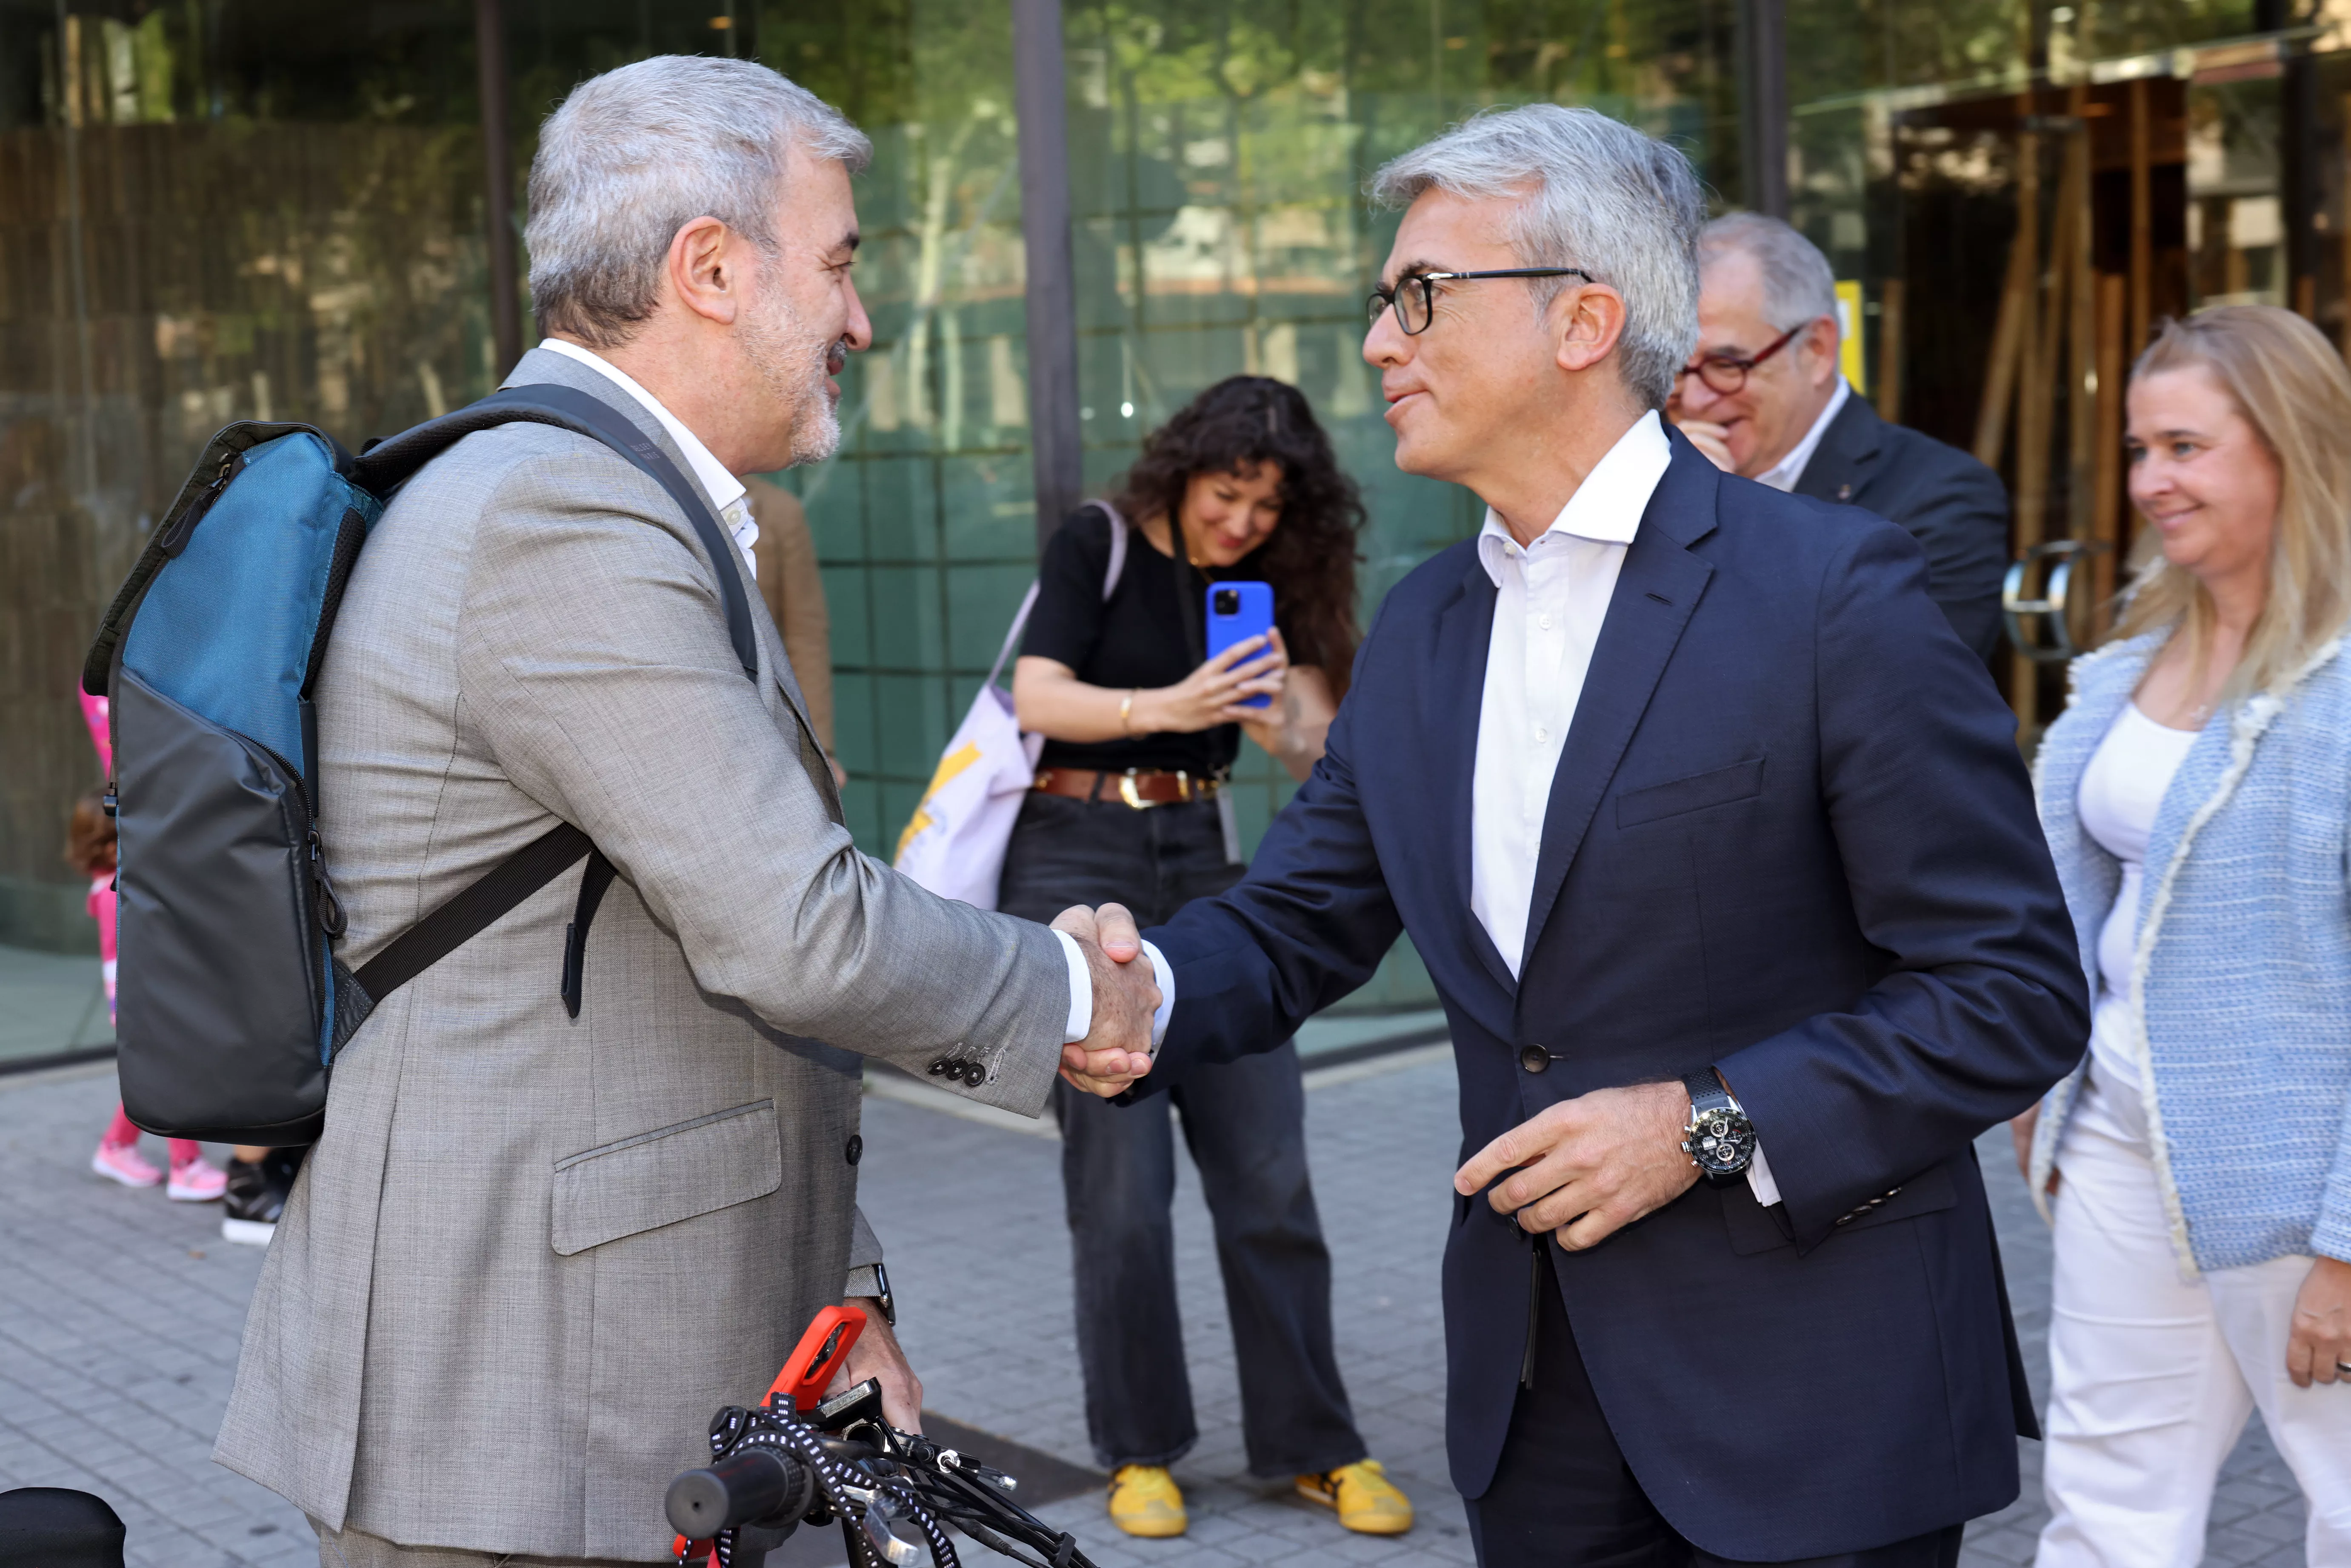 El alcalde de Barcelona inaugura las nuevas oficinas de Novartis en la ciudad condal 